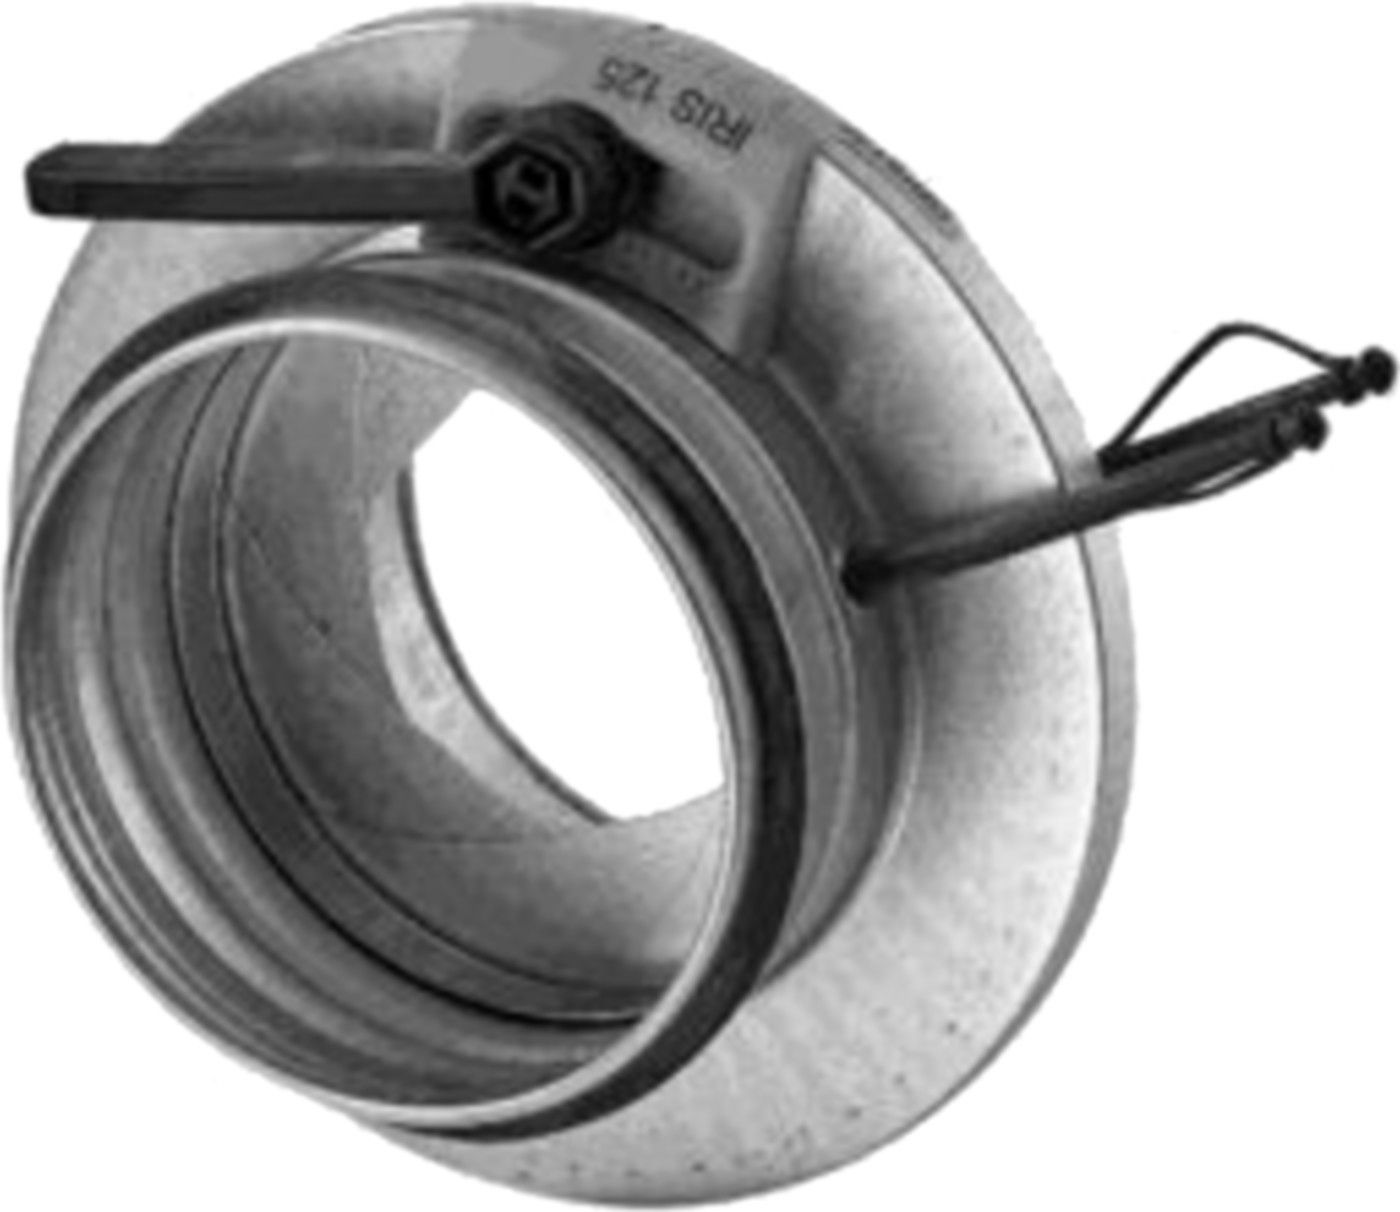 Irisblende 250mm IBU-V - Spiralfalzrohre und Zubehör System Safe